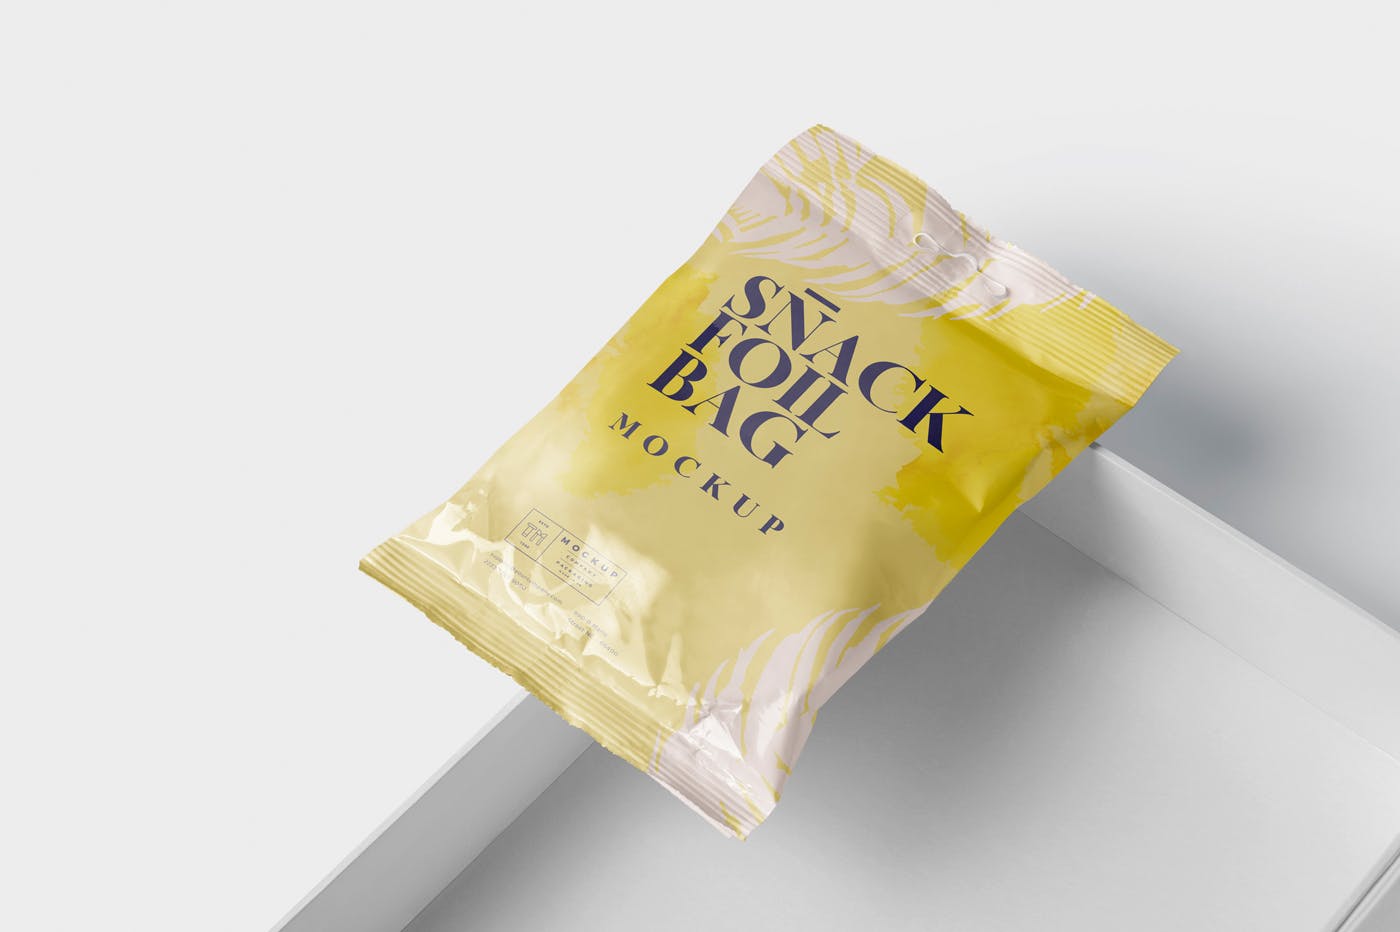 小吃零食铝箔包装袋设计样机模板 Snack Foil Bag Mockup – Slim Size插图(4)